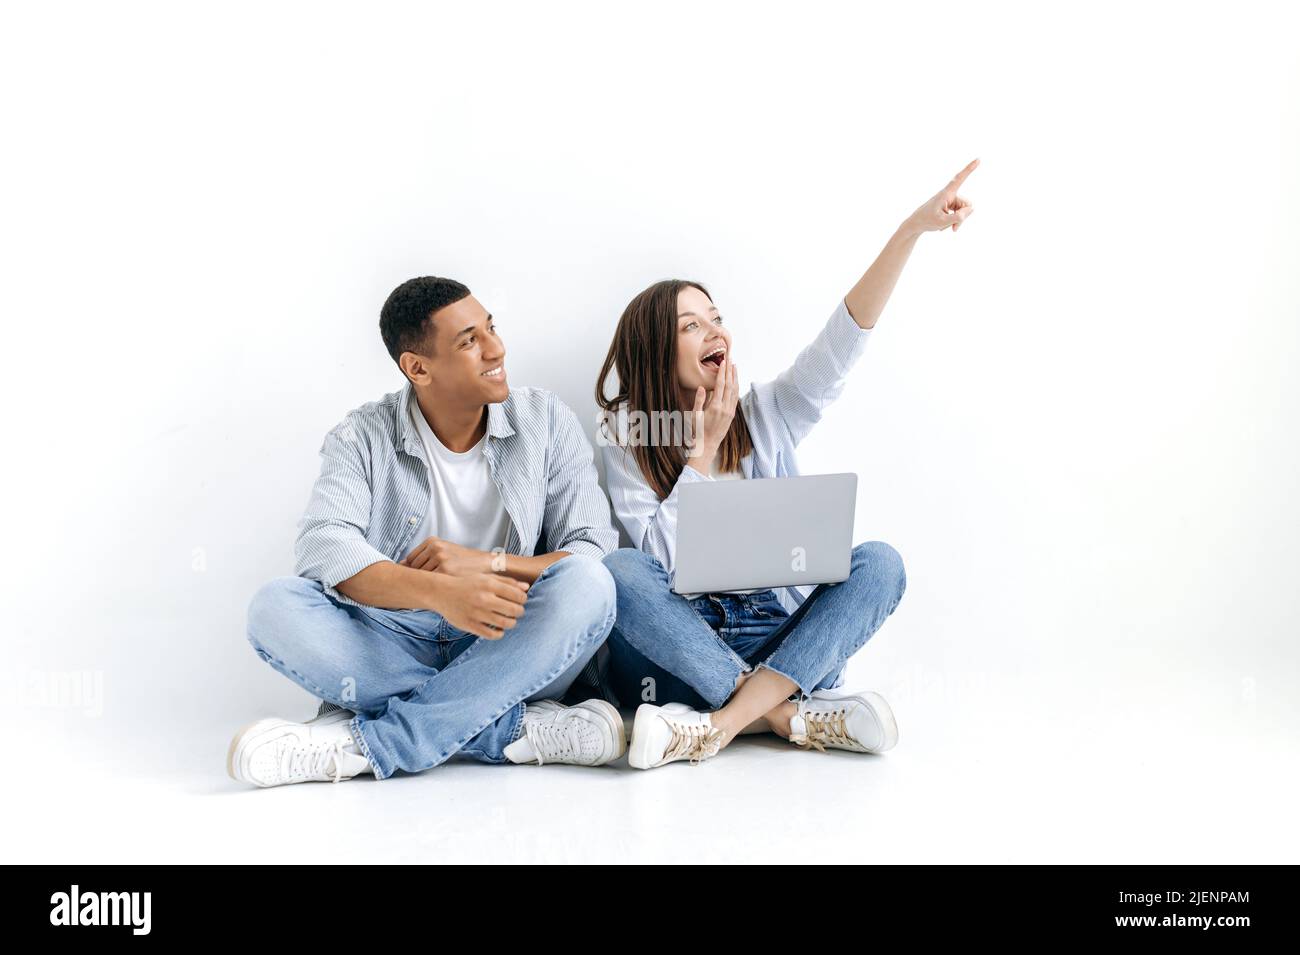 Un couple multiracial positif, une femme caucasienne et un homme hispanique, sont assis avec un ordinateur portable sur le sol sur fond blanc isolé, regardant sur le côté, la fille pointe avec sa main à quelque chose Banque D'Images